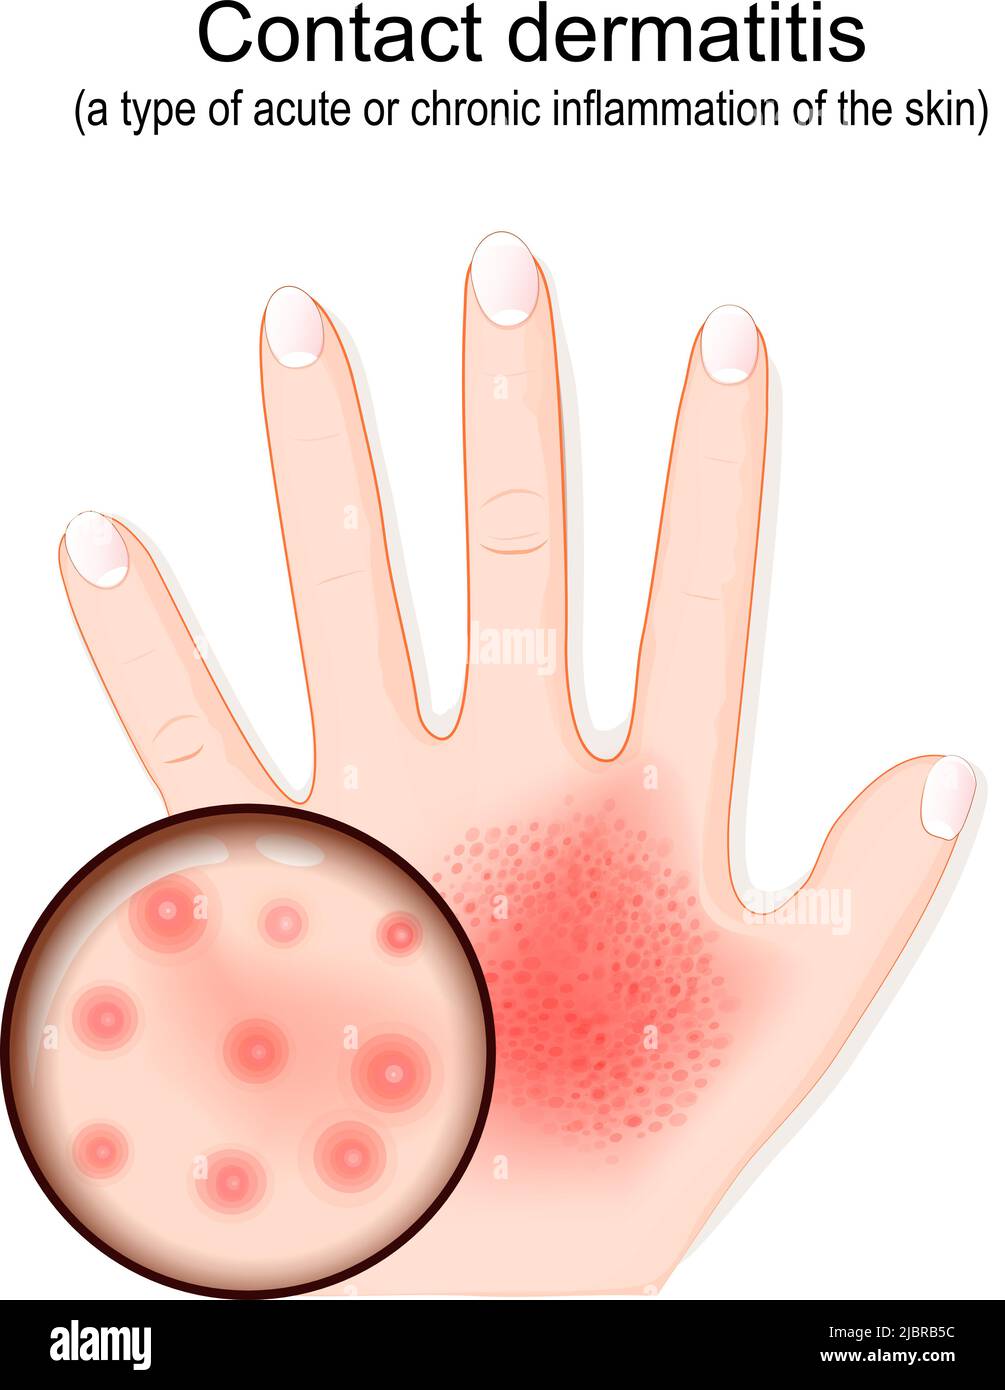 Dermatitis de contacto. Eccema atópico. Primer plano de la erupción en la mano. Piel humana con dermatitis. Penetración de alérgenos. Ilustración vectorial Ilustración del Vector